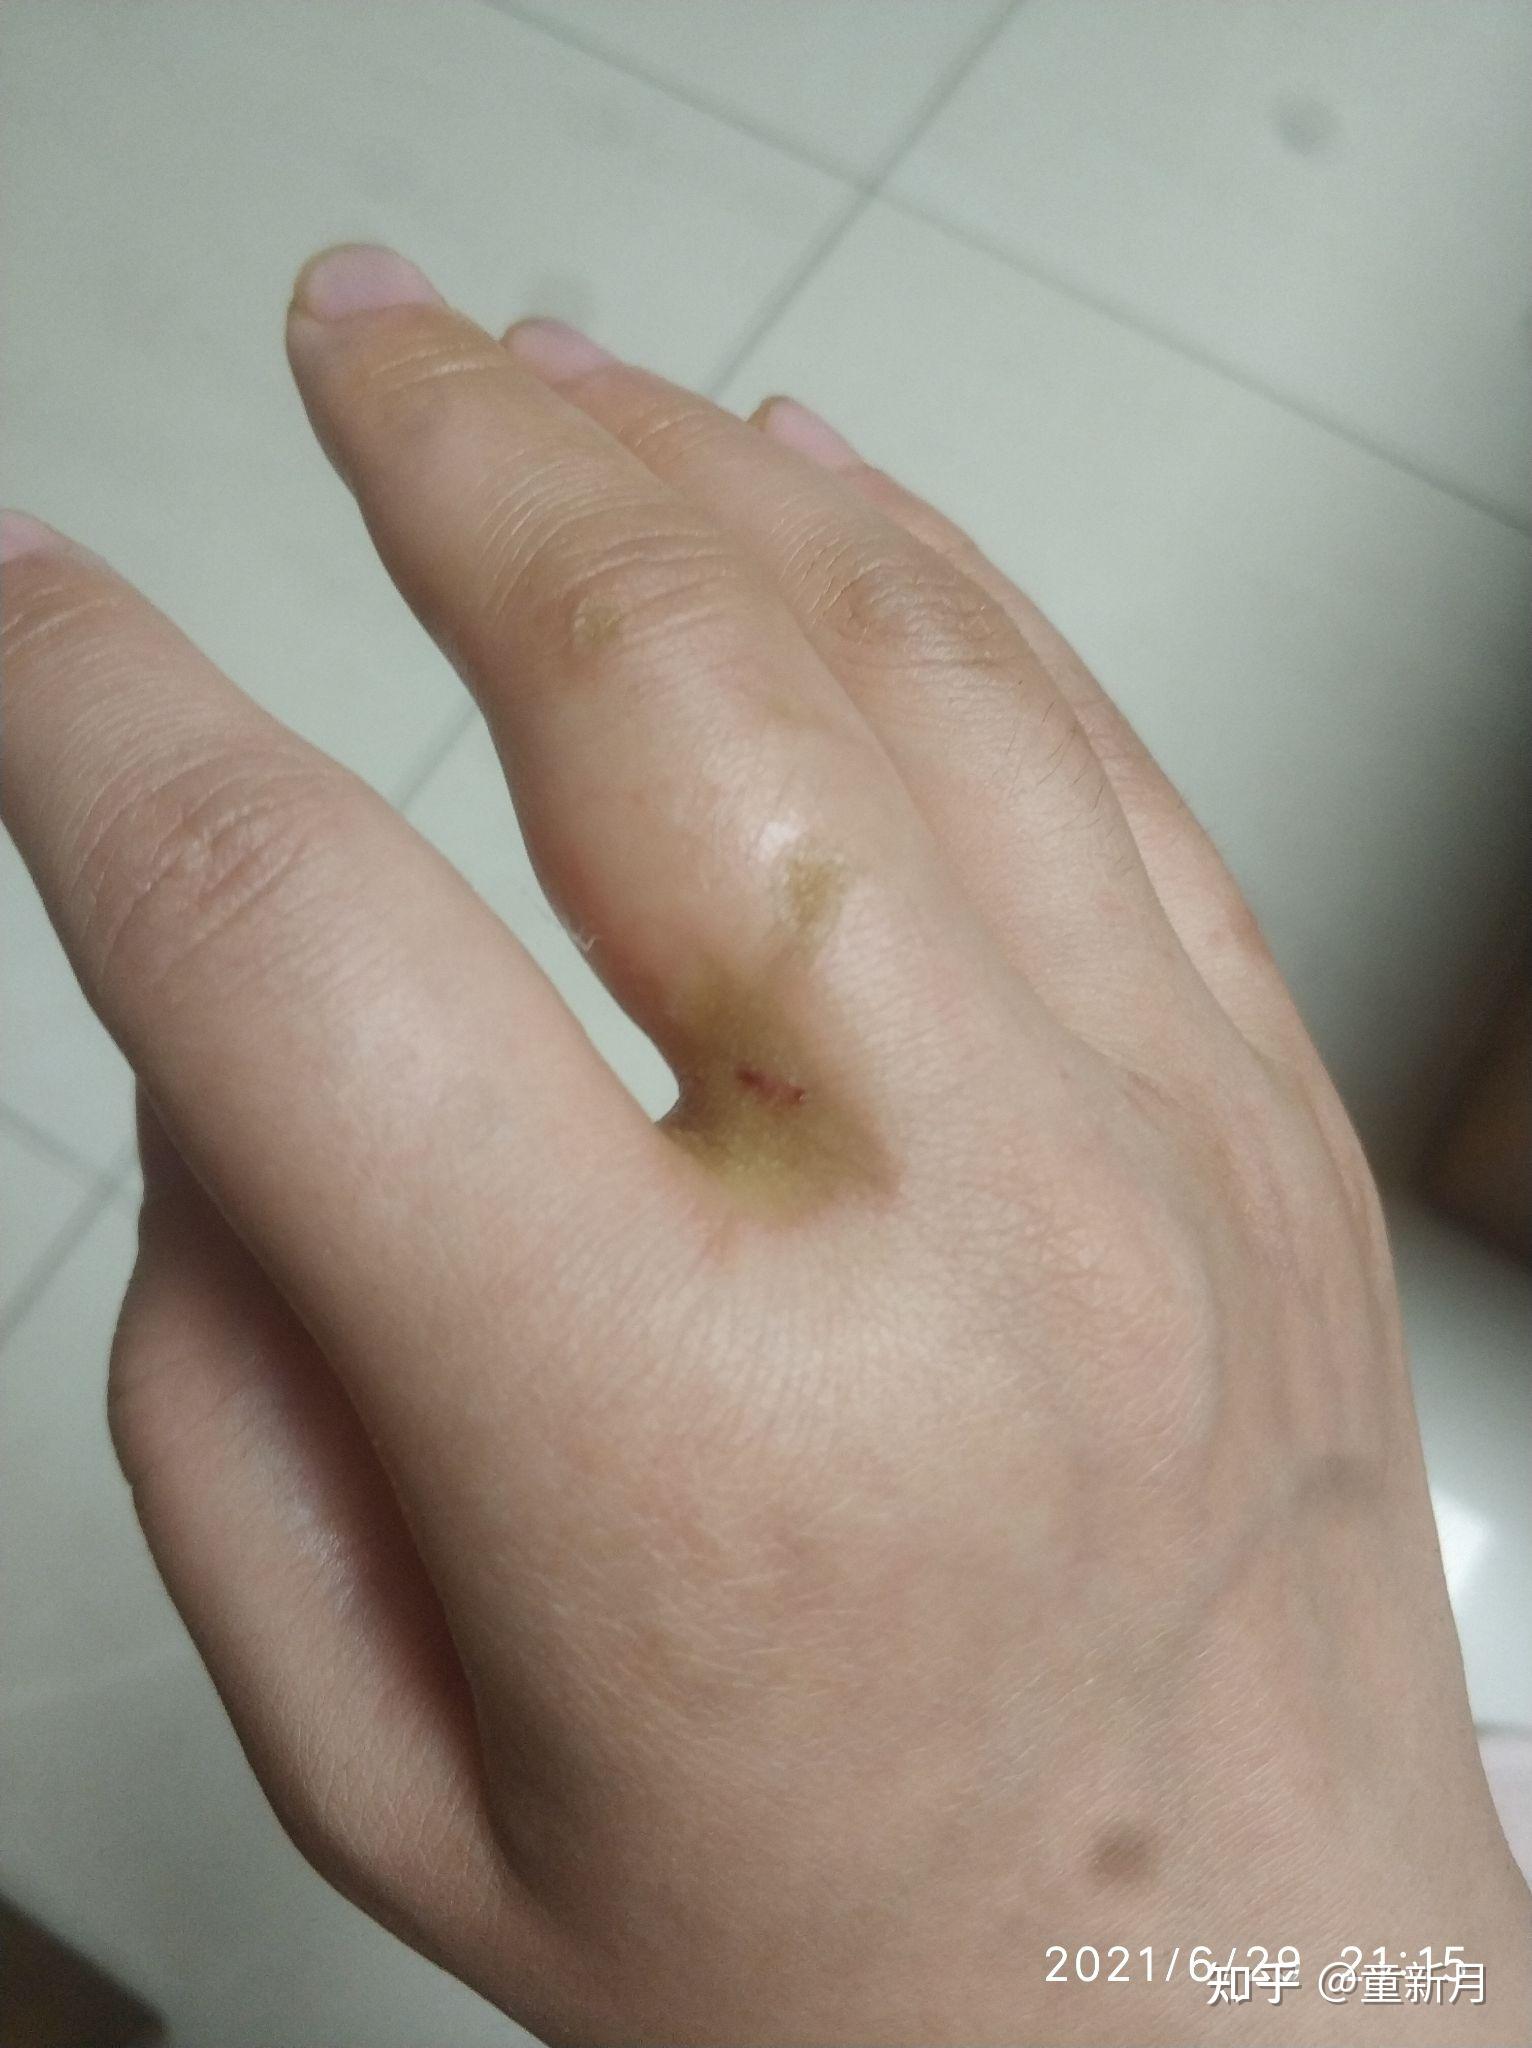 结果熬糖色的时候被溅起的糖油烫伤右手除大拇指外的四根手指,烫伤后